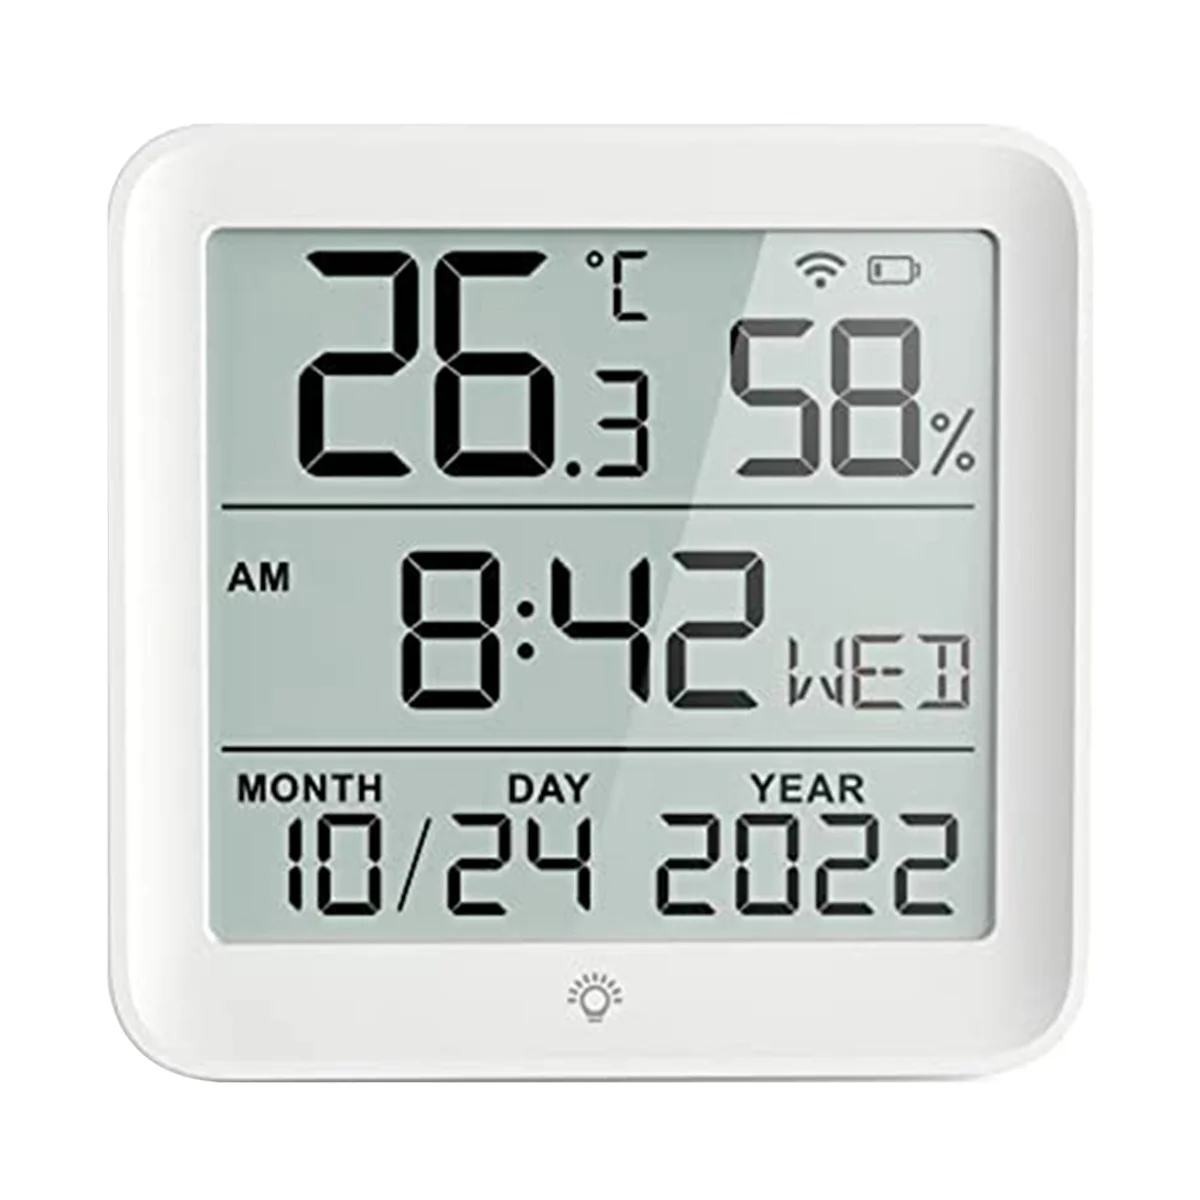  Intelligens hőmérséklet és páratartalom óra hőmérséklet és páratartalom érzékelő hőmérséklet és páratartalom óra